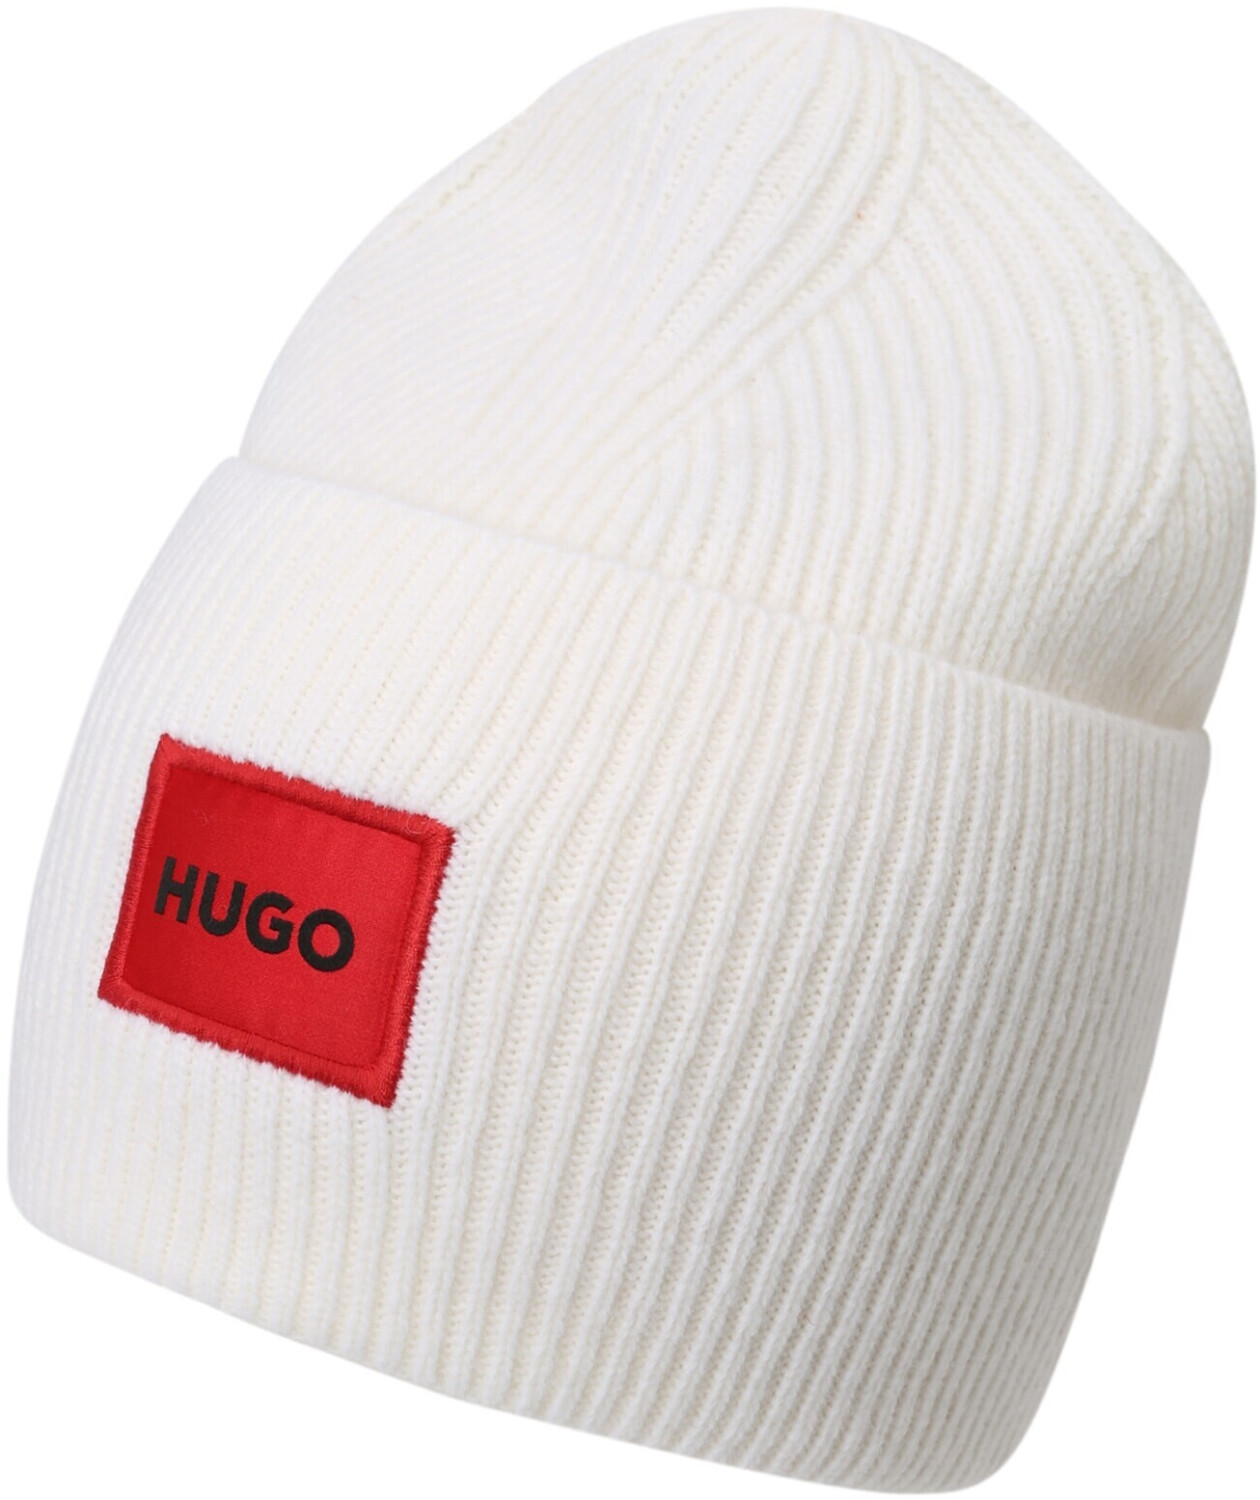 Preisvergleich (50496011) Hugo white 60,00 | ab Xaff 6 € bei